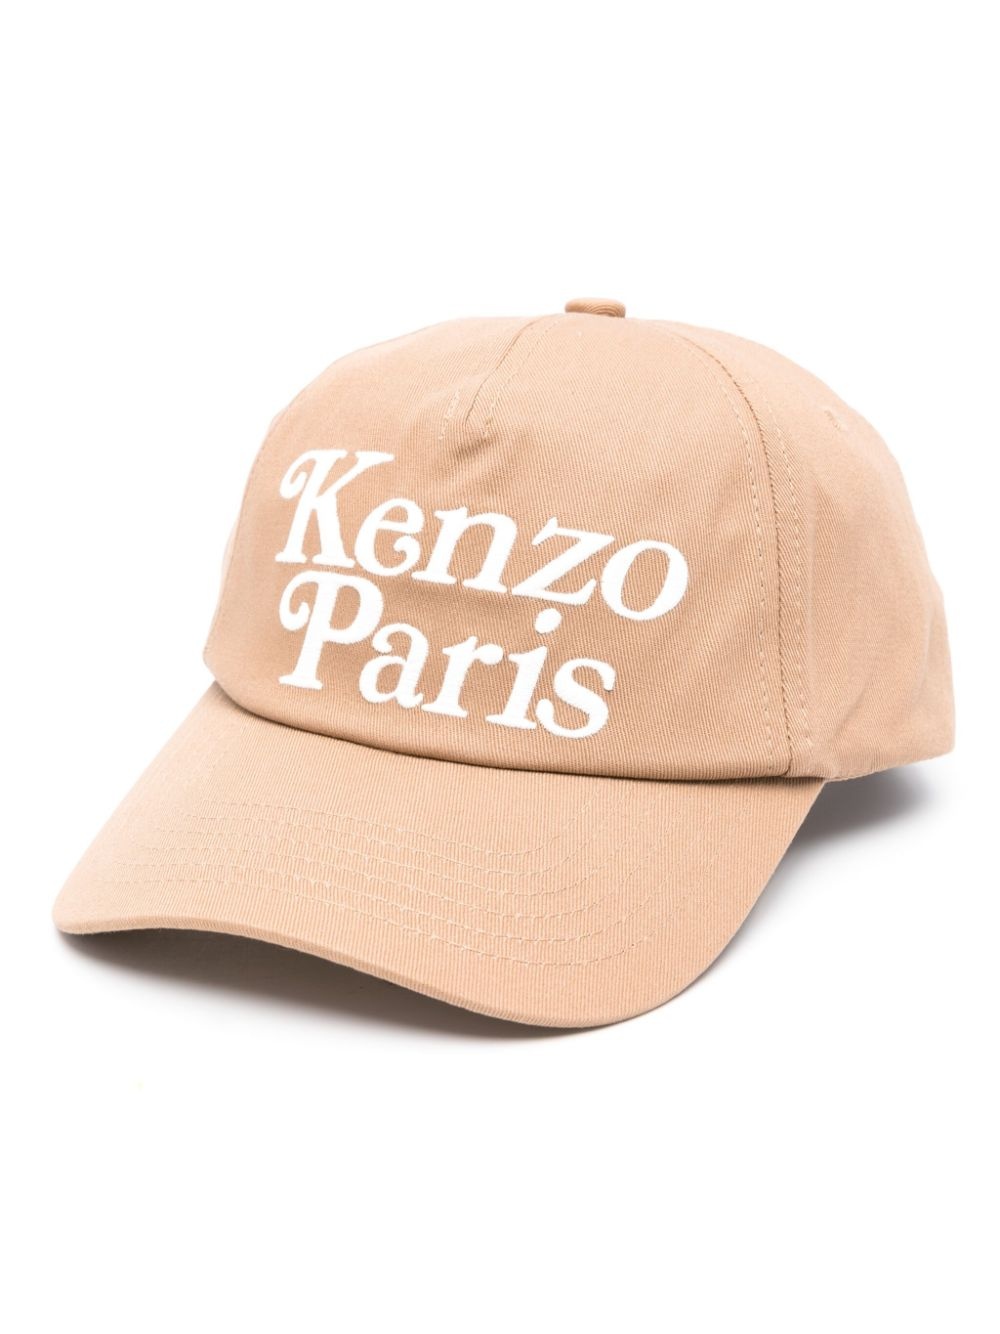 x Verdy Kenzo Utility cap - 1